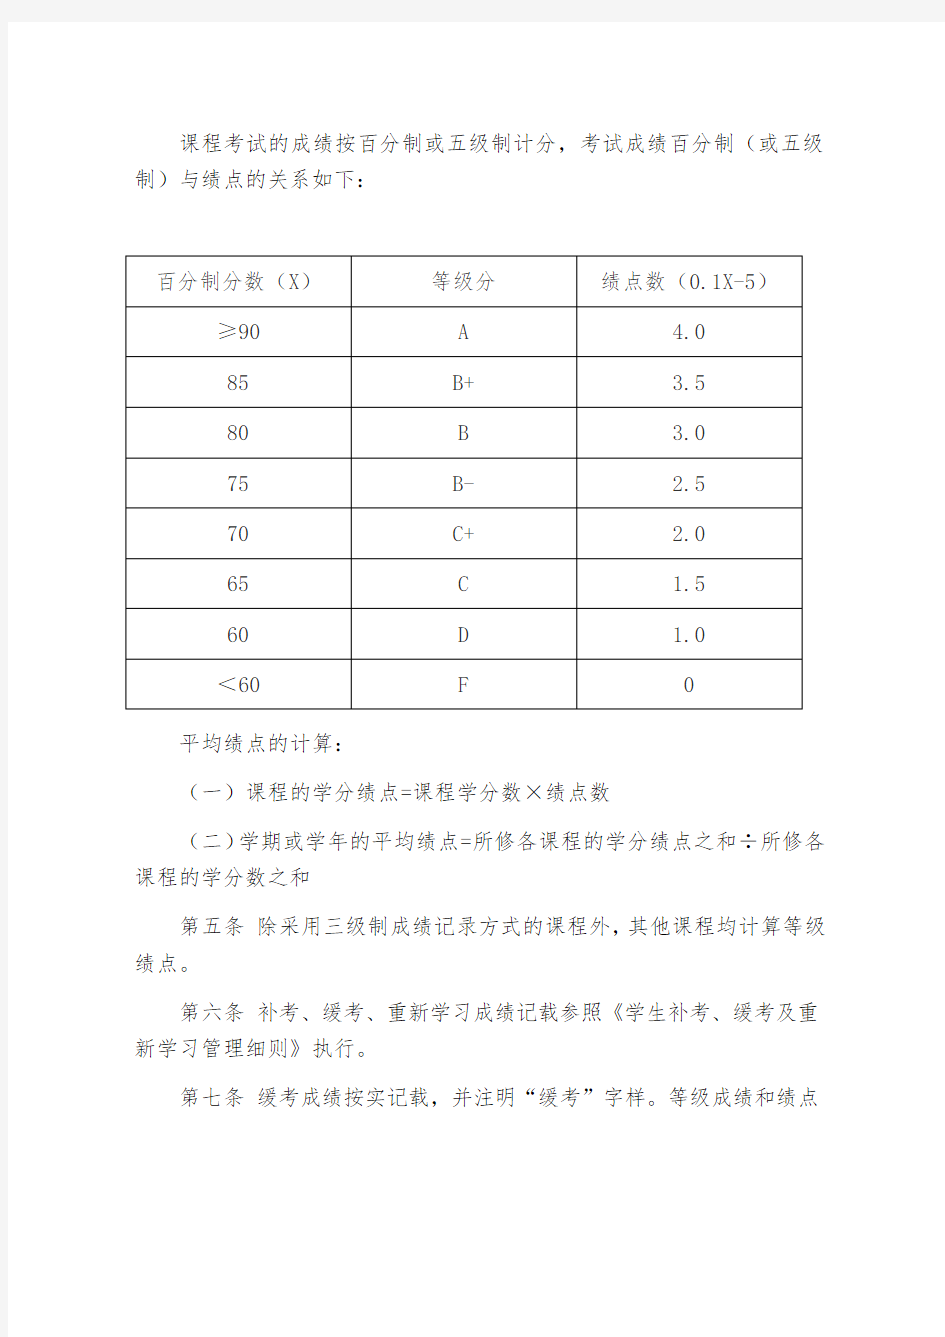 上海外国语大学贤达经济人文学院学生成绩管理规定